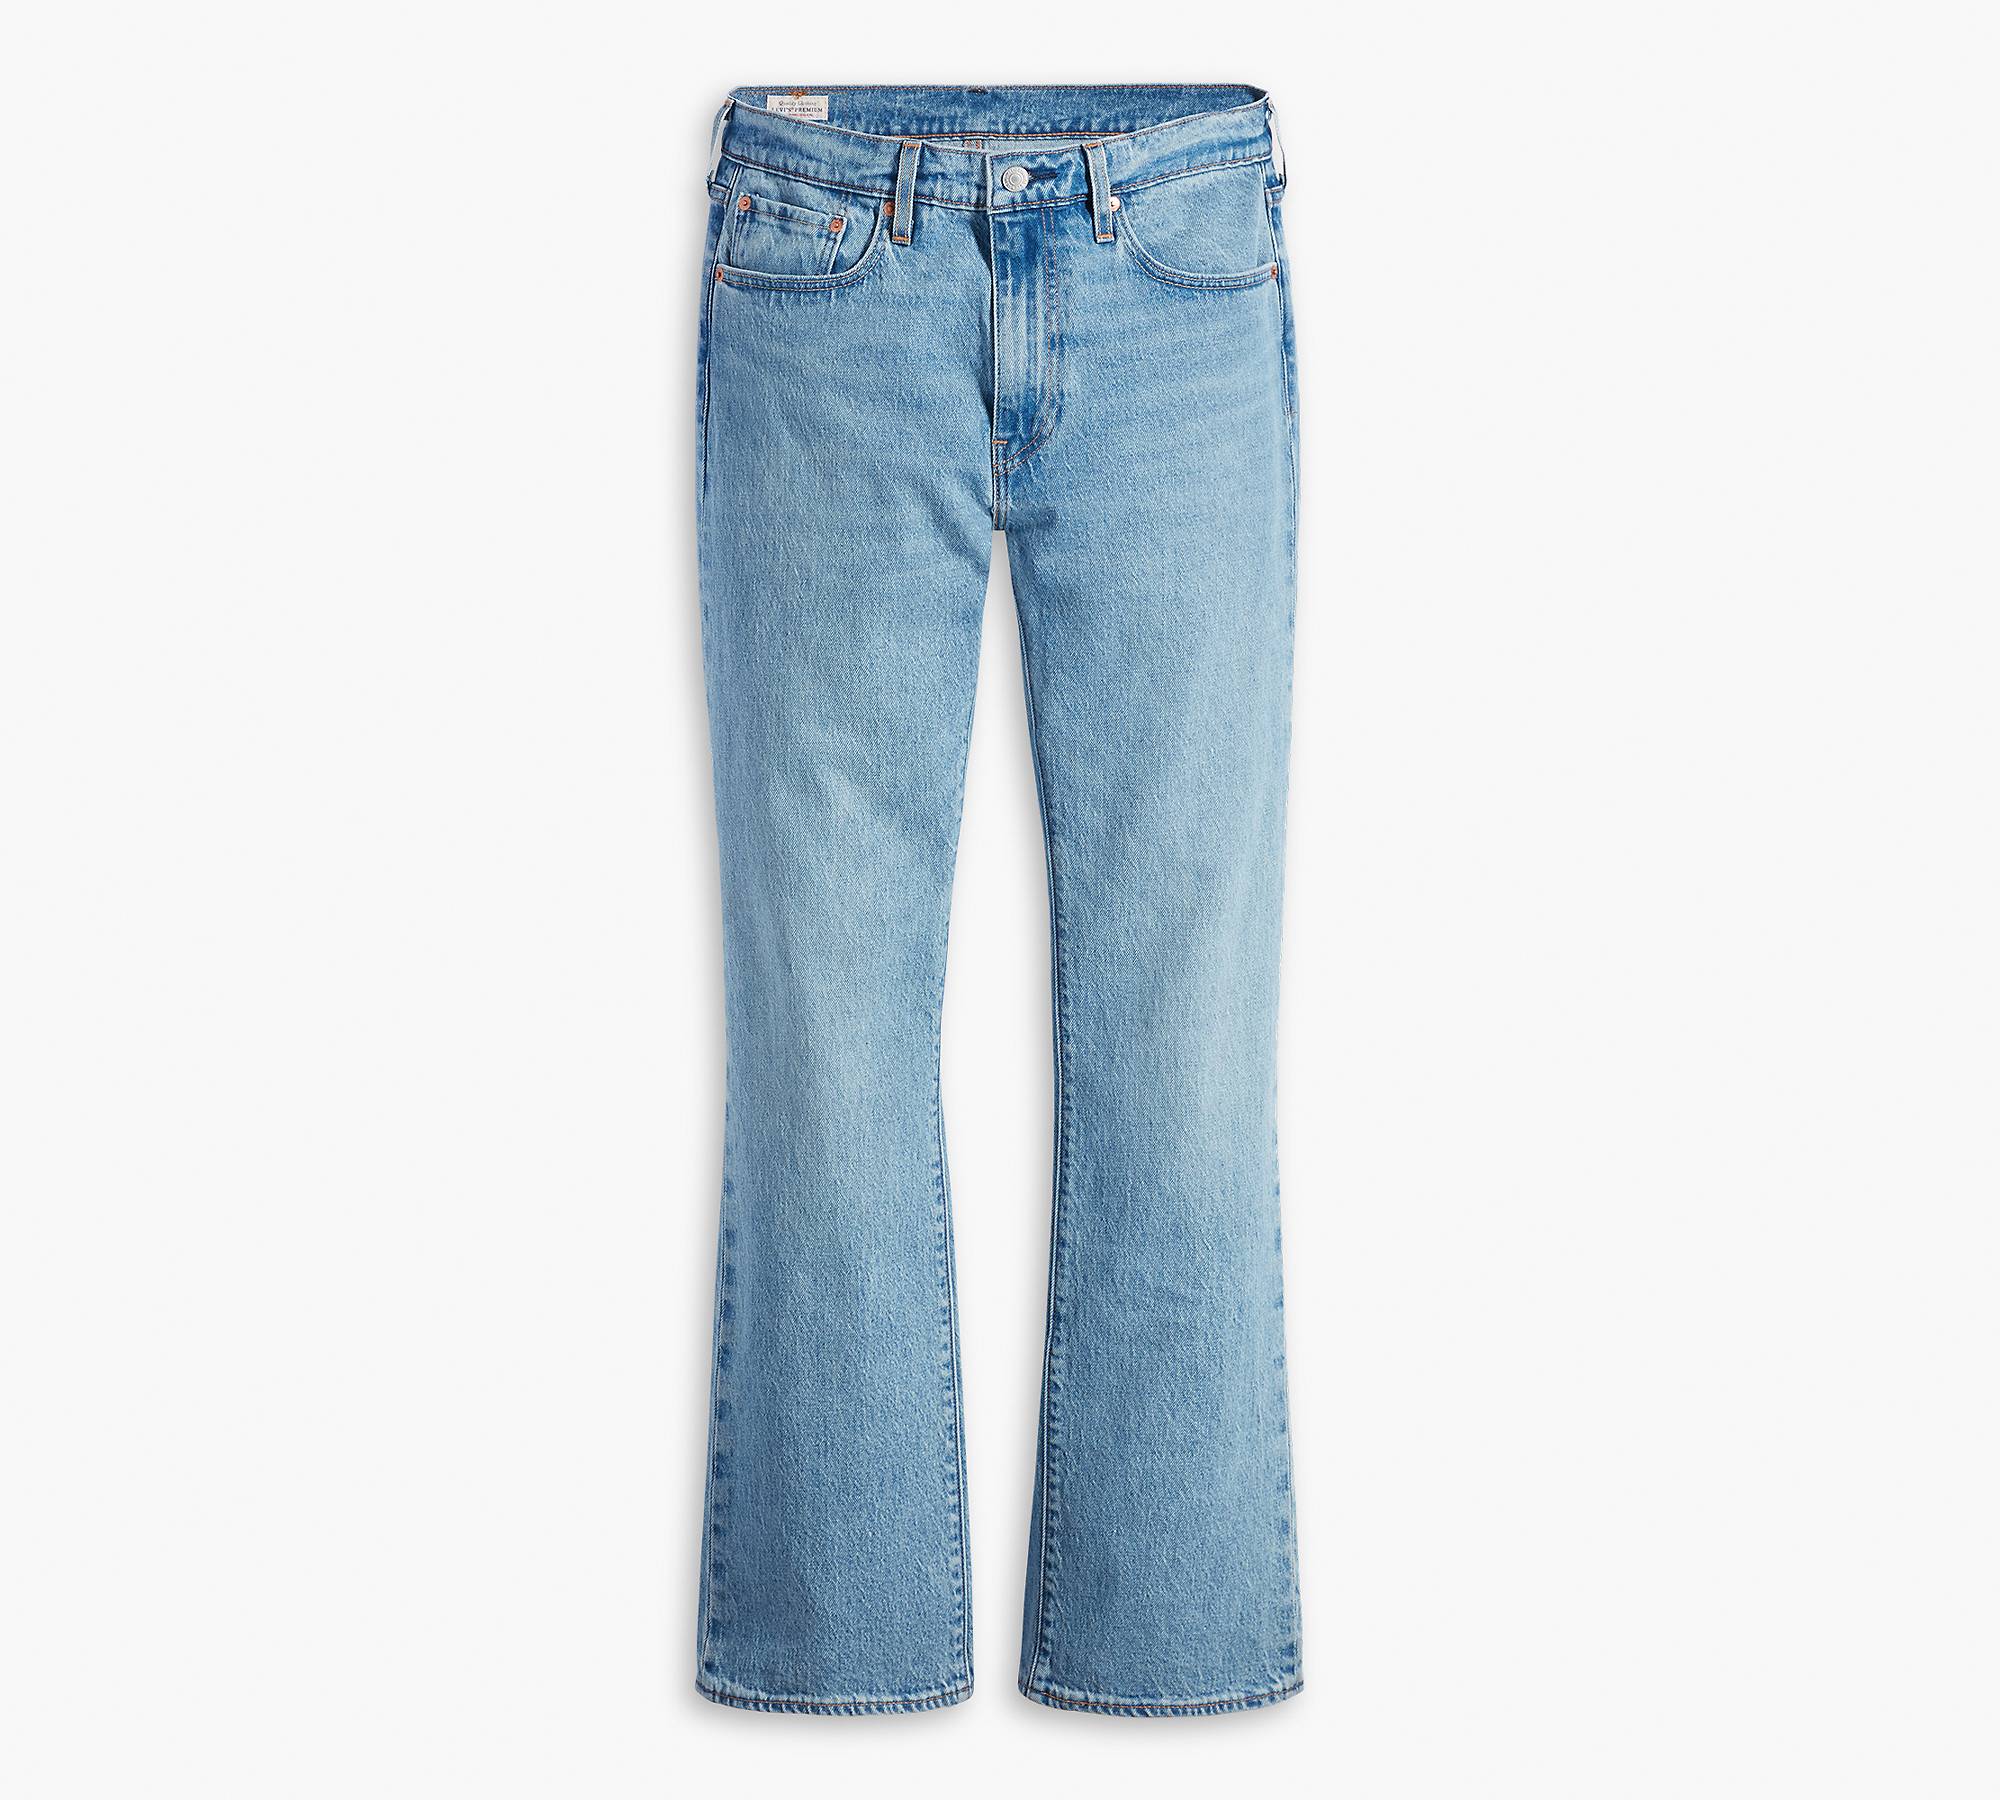 527™ Slim Bootcut Men's Jeans - Medium Wash | Levi's® CA